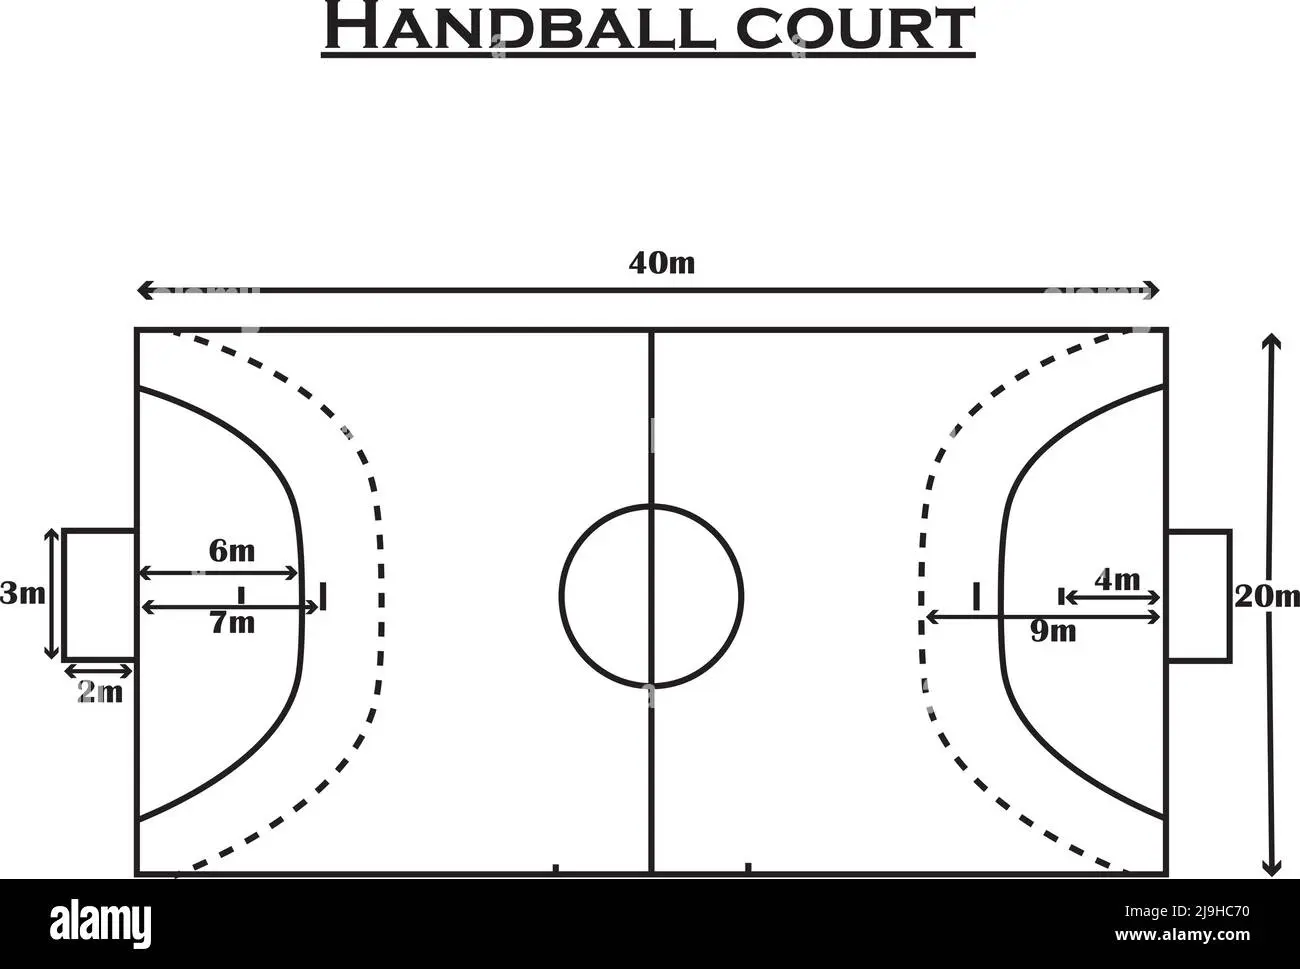 campo de juego de handball lineas y medidas - Cuánto mide la línea de tiro libre en handball